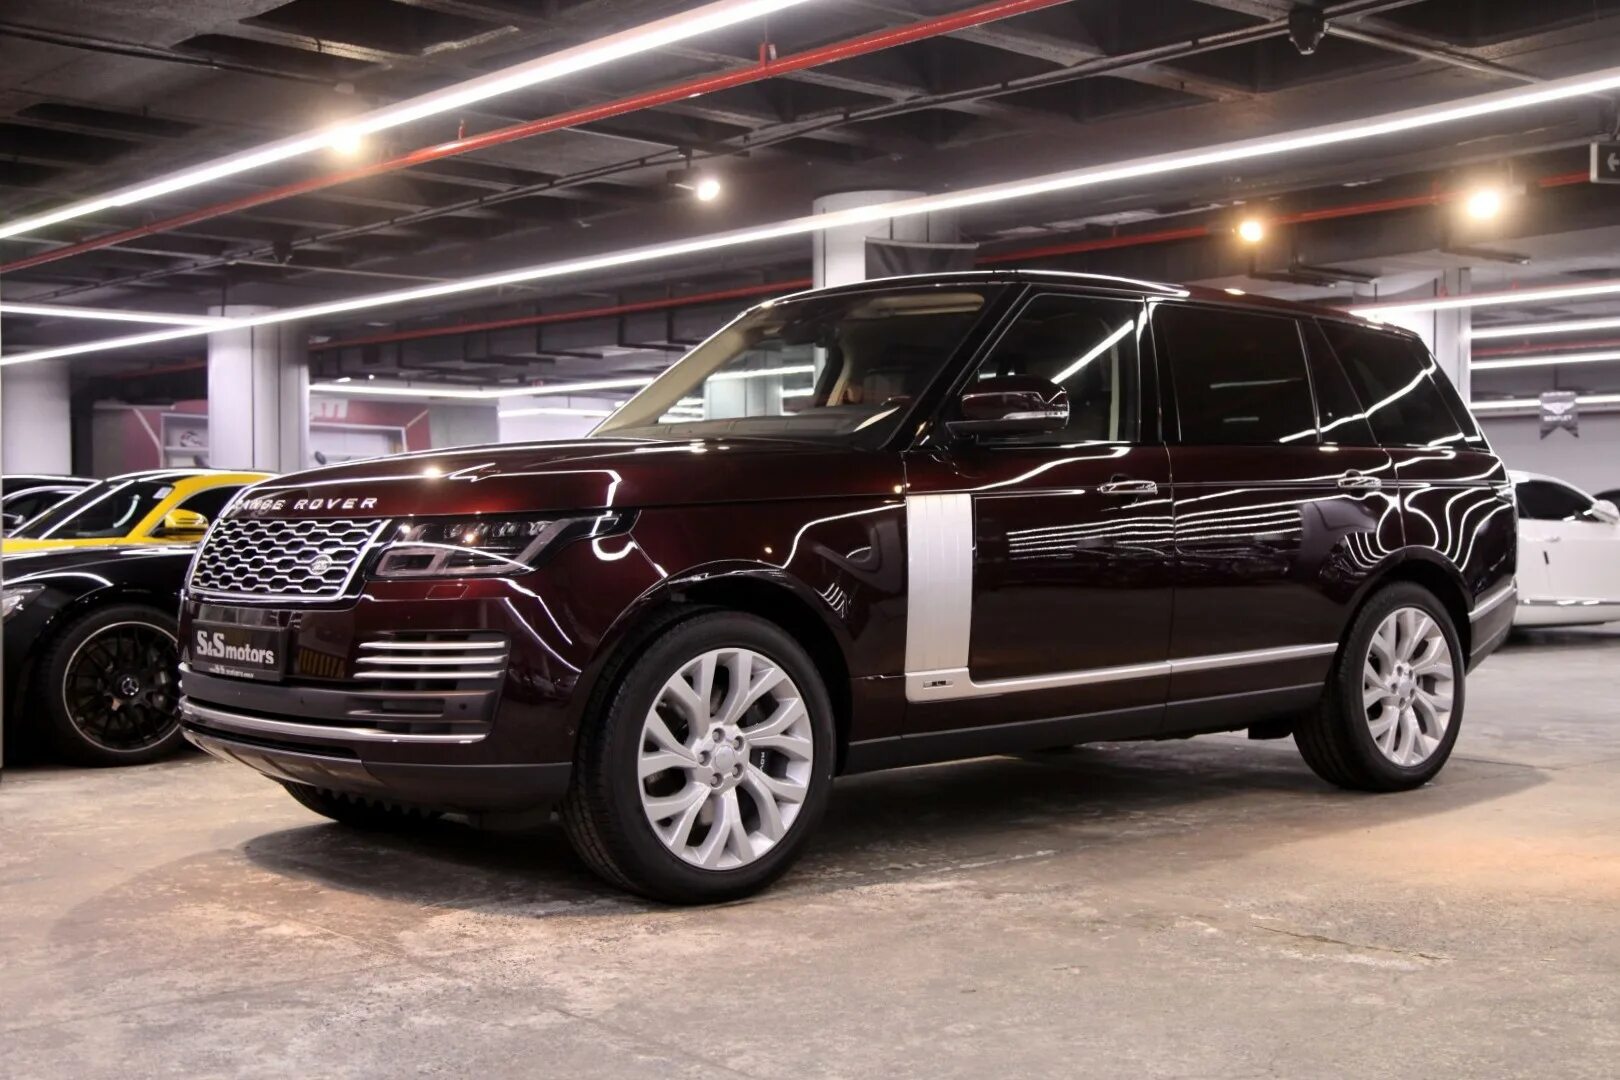 Рендж гибрид. Range Rover Hybrid. Land Rover Autobiography гибрид. Новый китайский автомобиль похожий на Рендж Ровер.